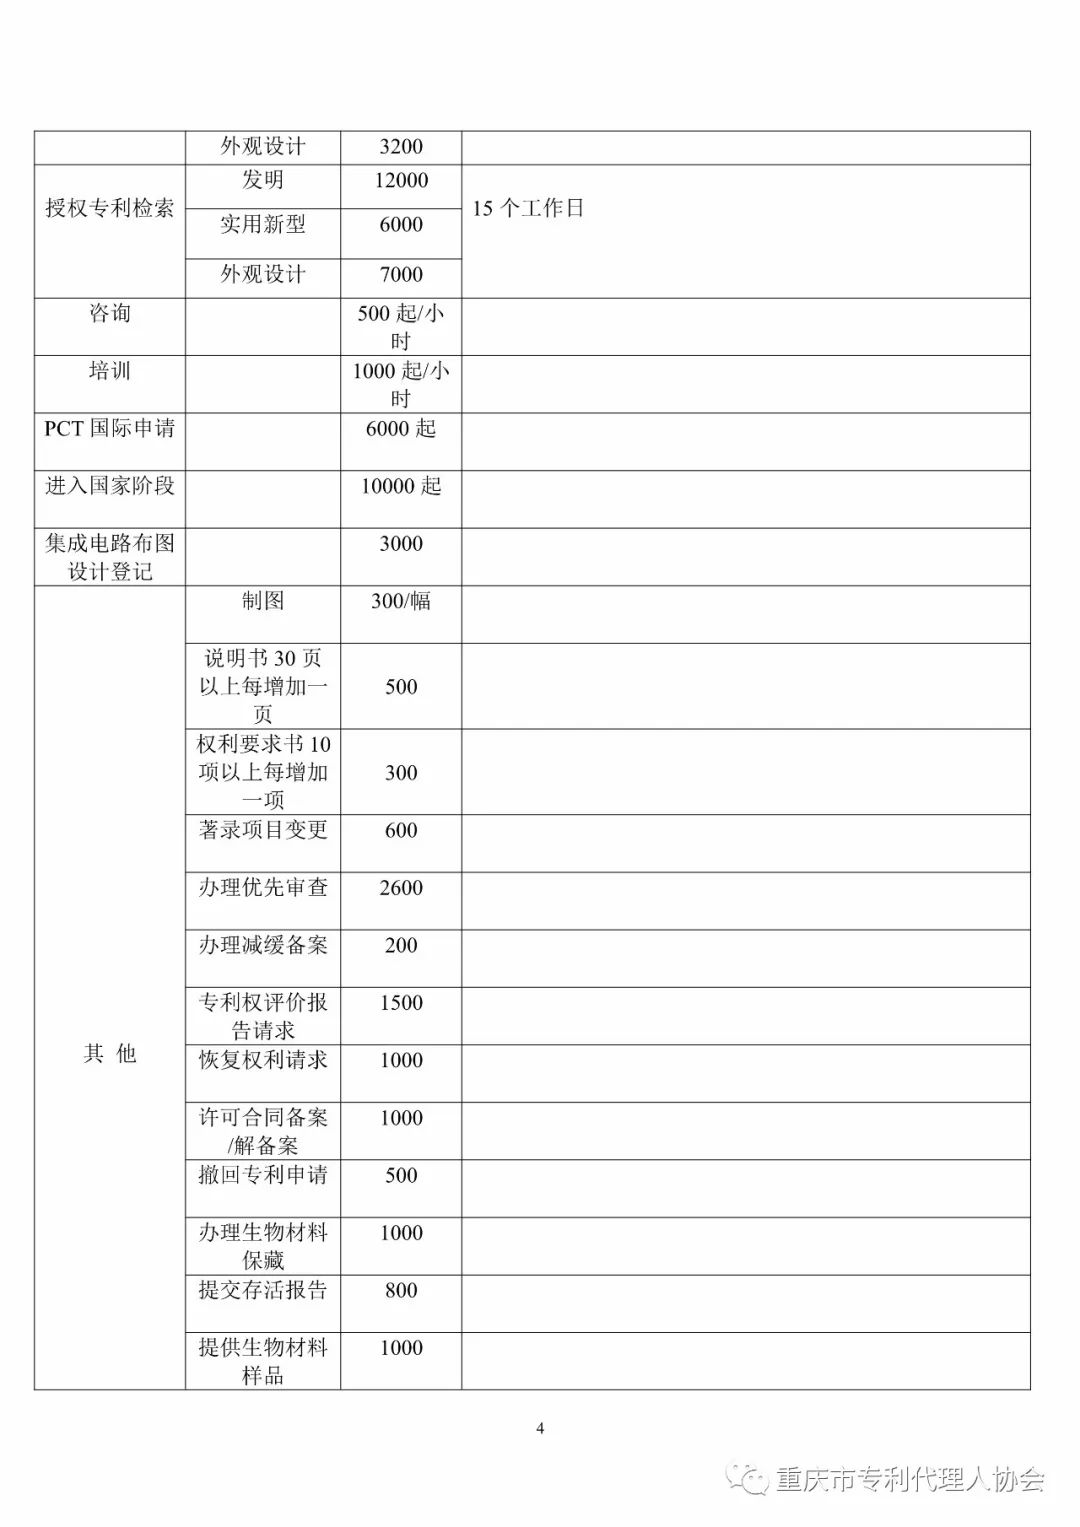 震惊！重庆市专代协会发布的「专利代理服务收费指导标准」被举报